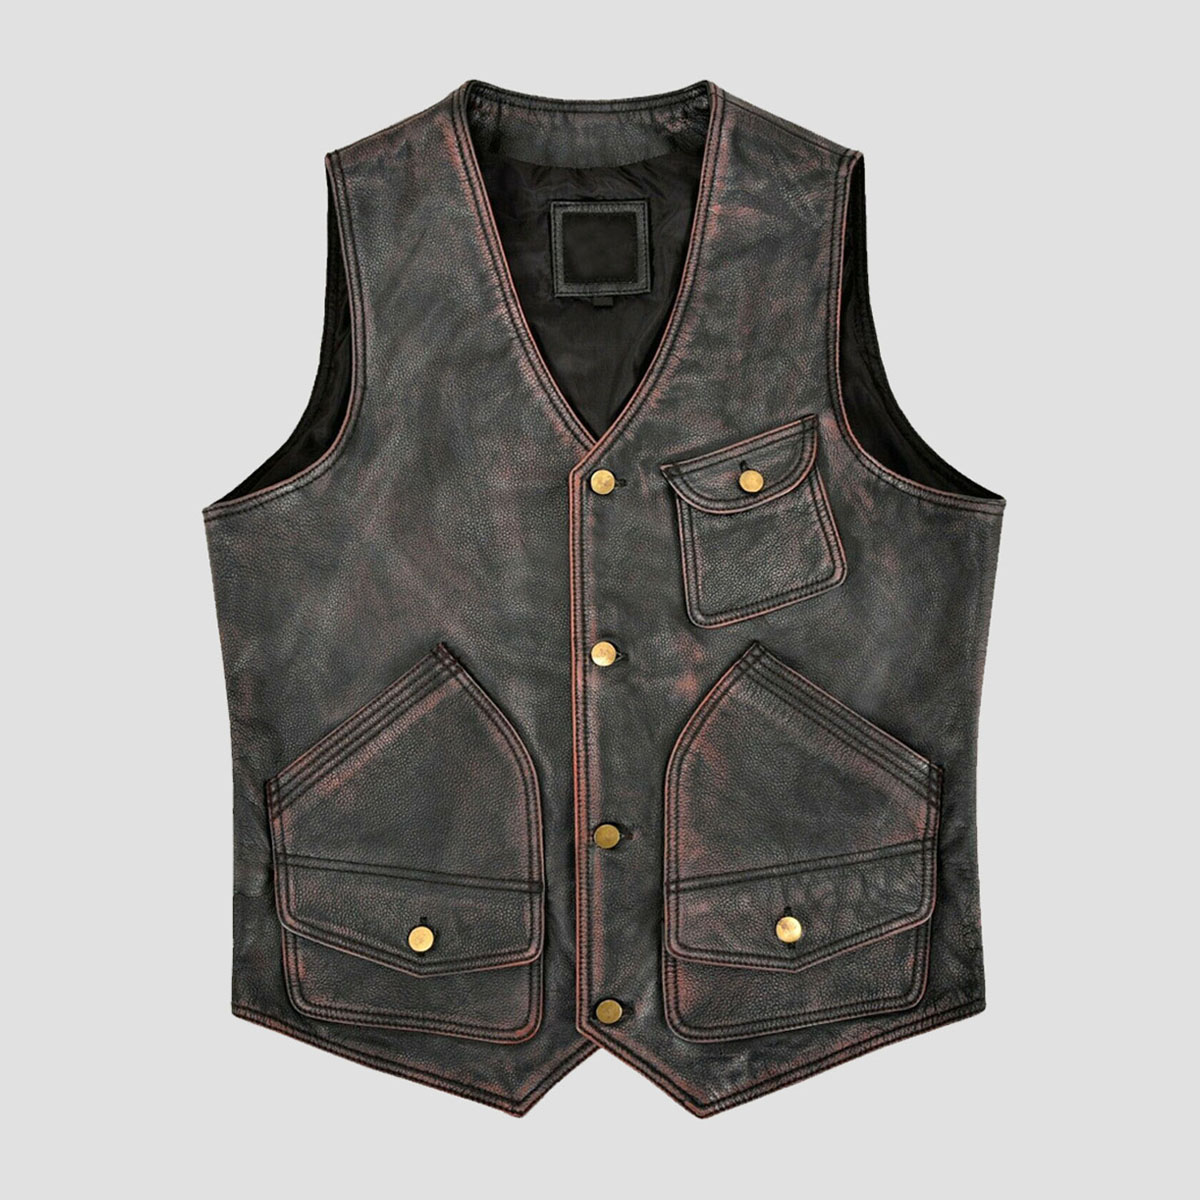 Elegant Vintage Black Leather Vest - The Vintage Leather